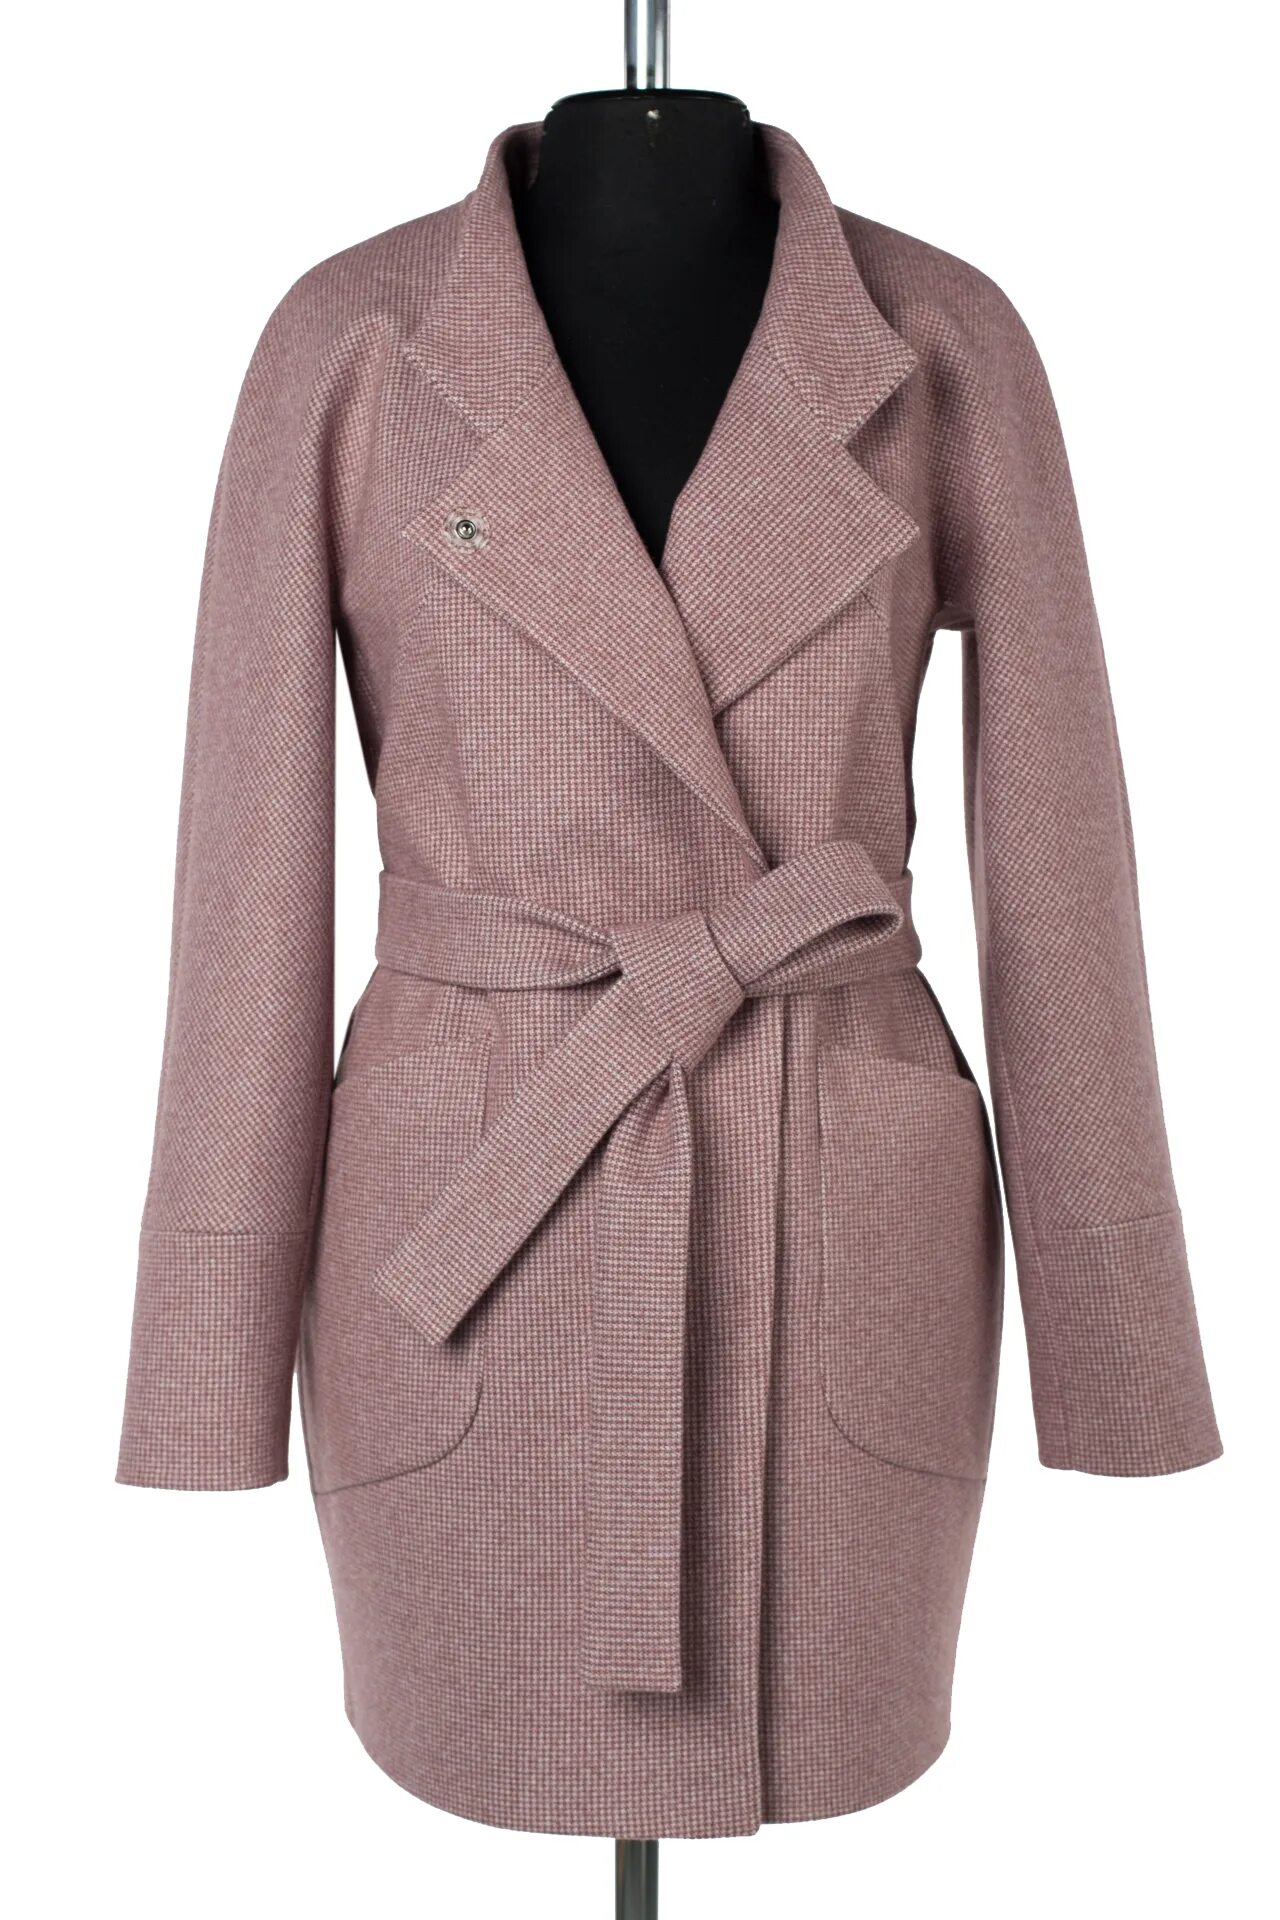 Пальто женское Дема 332246 модель 16115. Пальто Микроворса. YUVITA пальто женское демисезонное. Пальто женское Большевичка демо 332246 модель 16115.